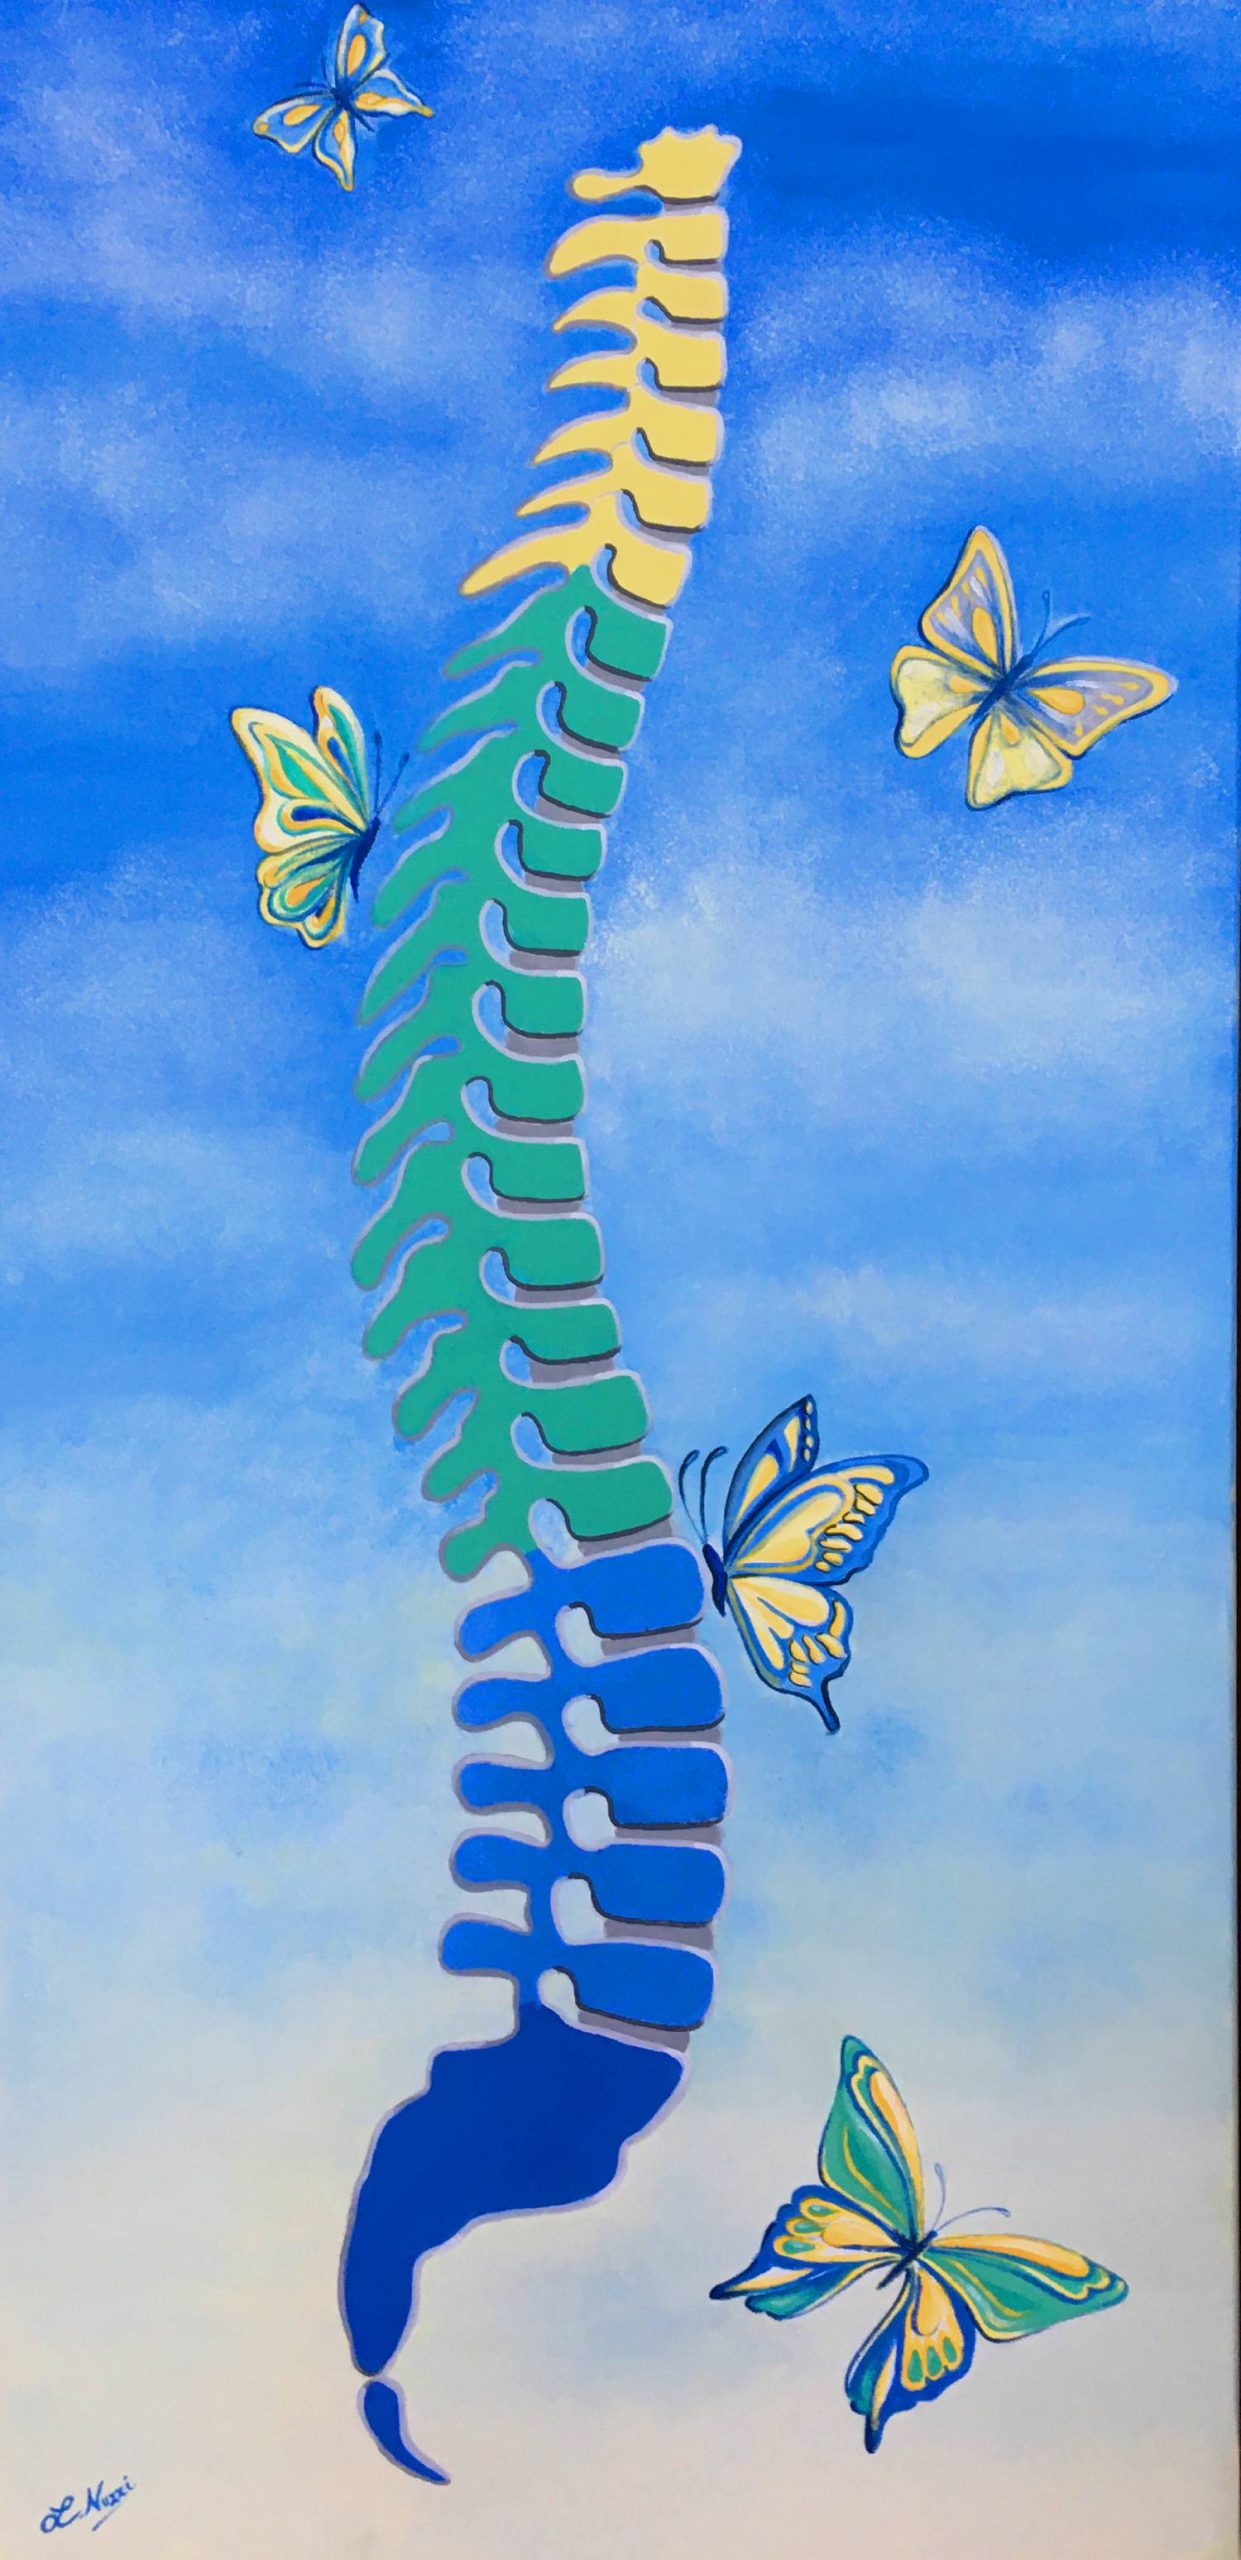 Vendita online opera di pittura acrilica dal titolo “Butterfly” realizzata dall'artista contemporanea Linda Nuzzi